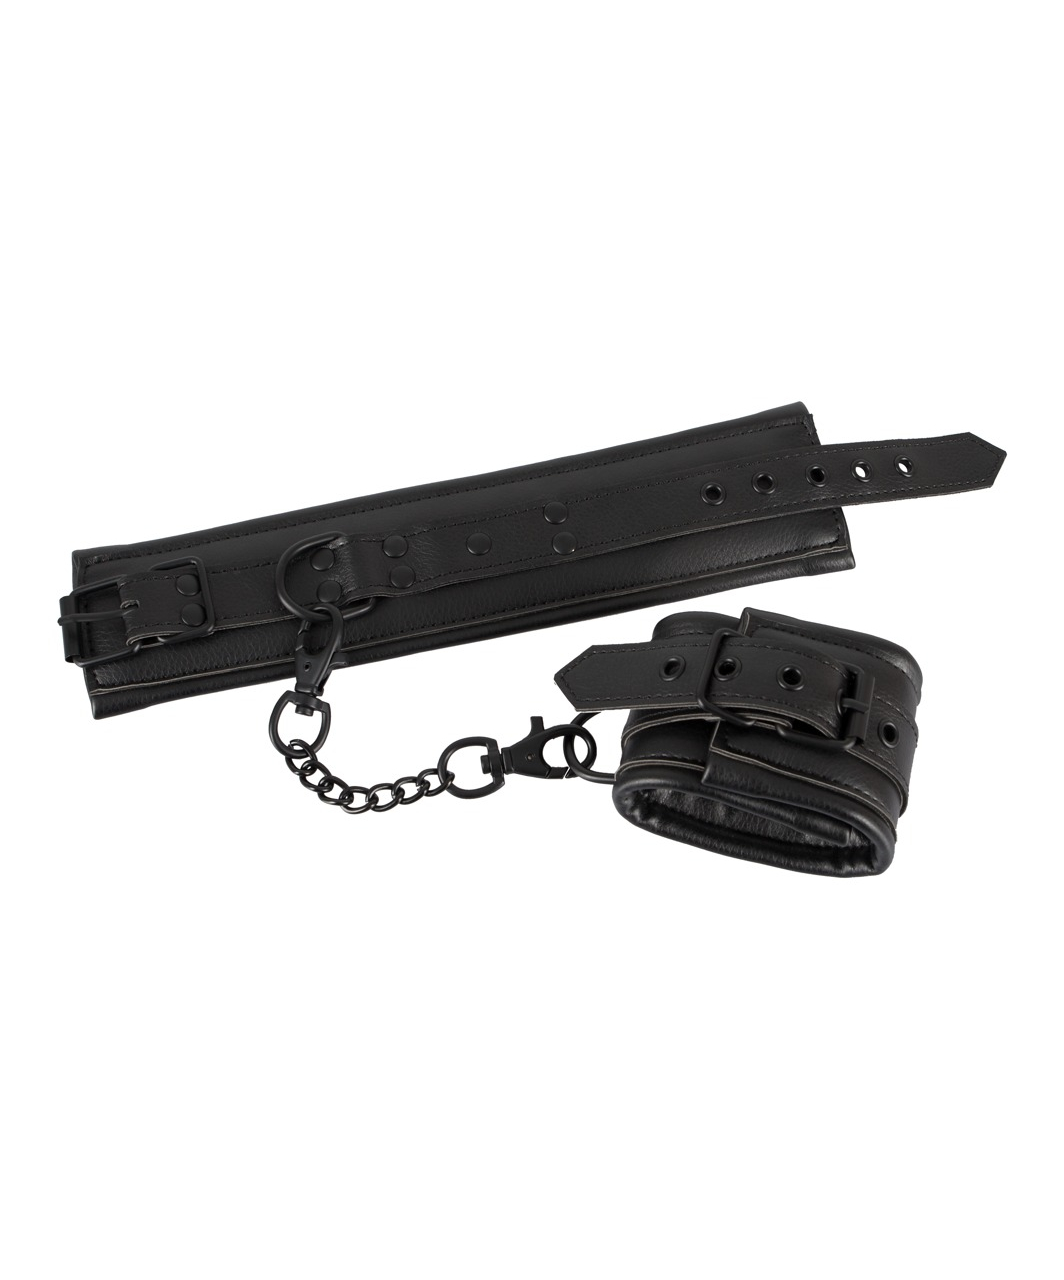 Bad Kitty черные наручники из искусственной кожи